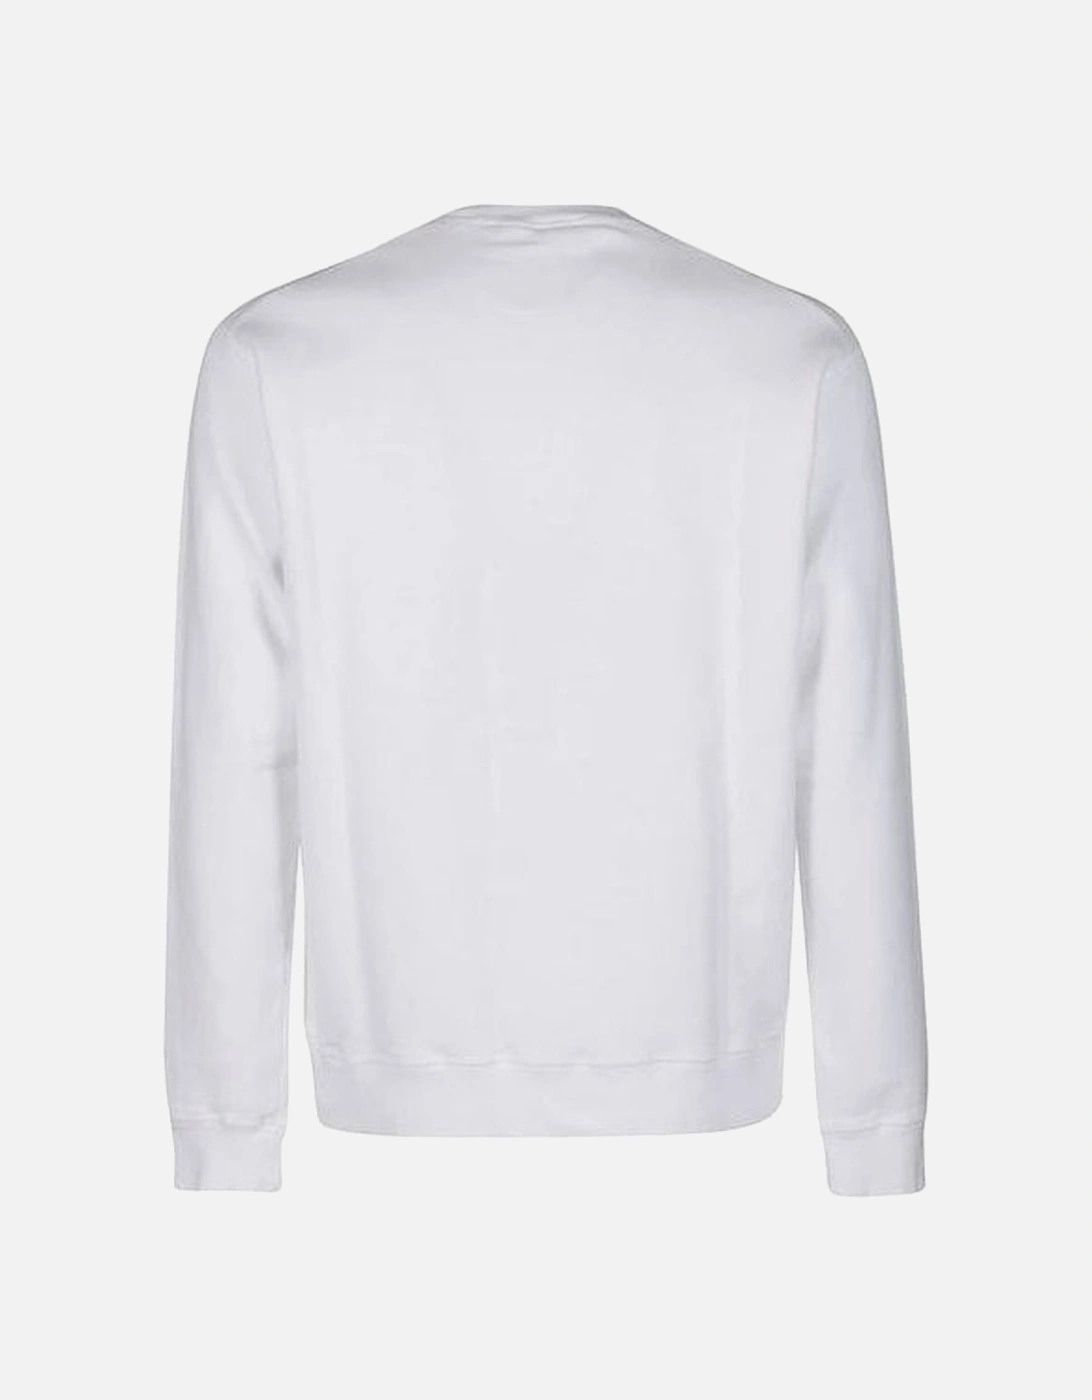 Cotton Printed Icon Logo White Sweatshirt